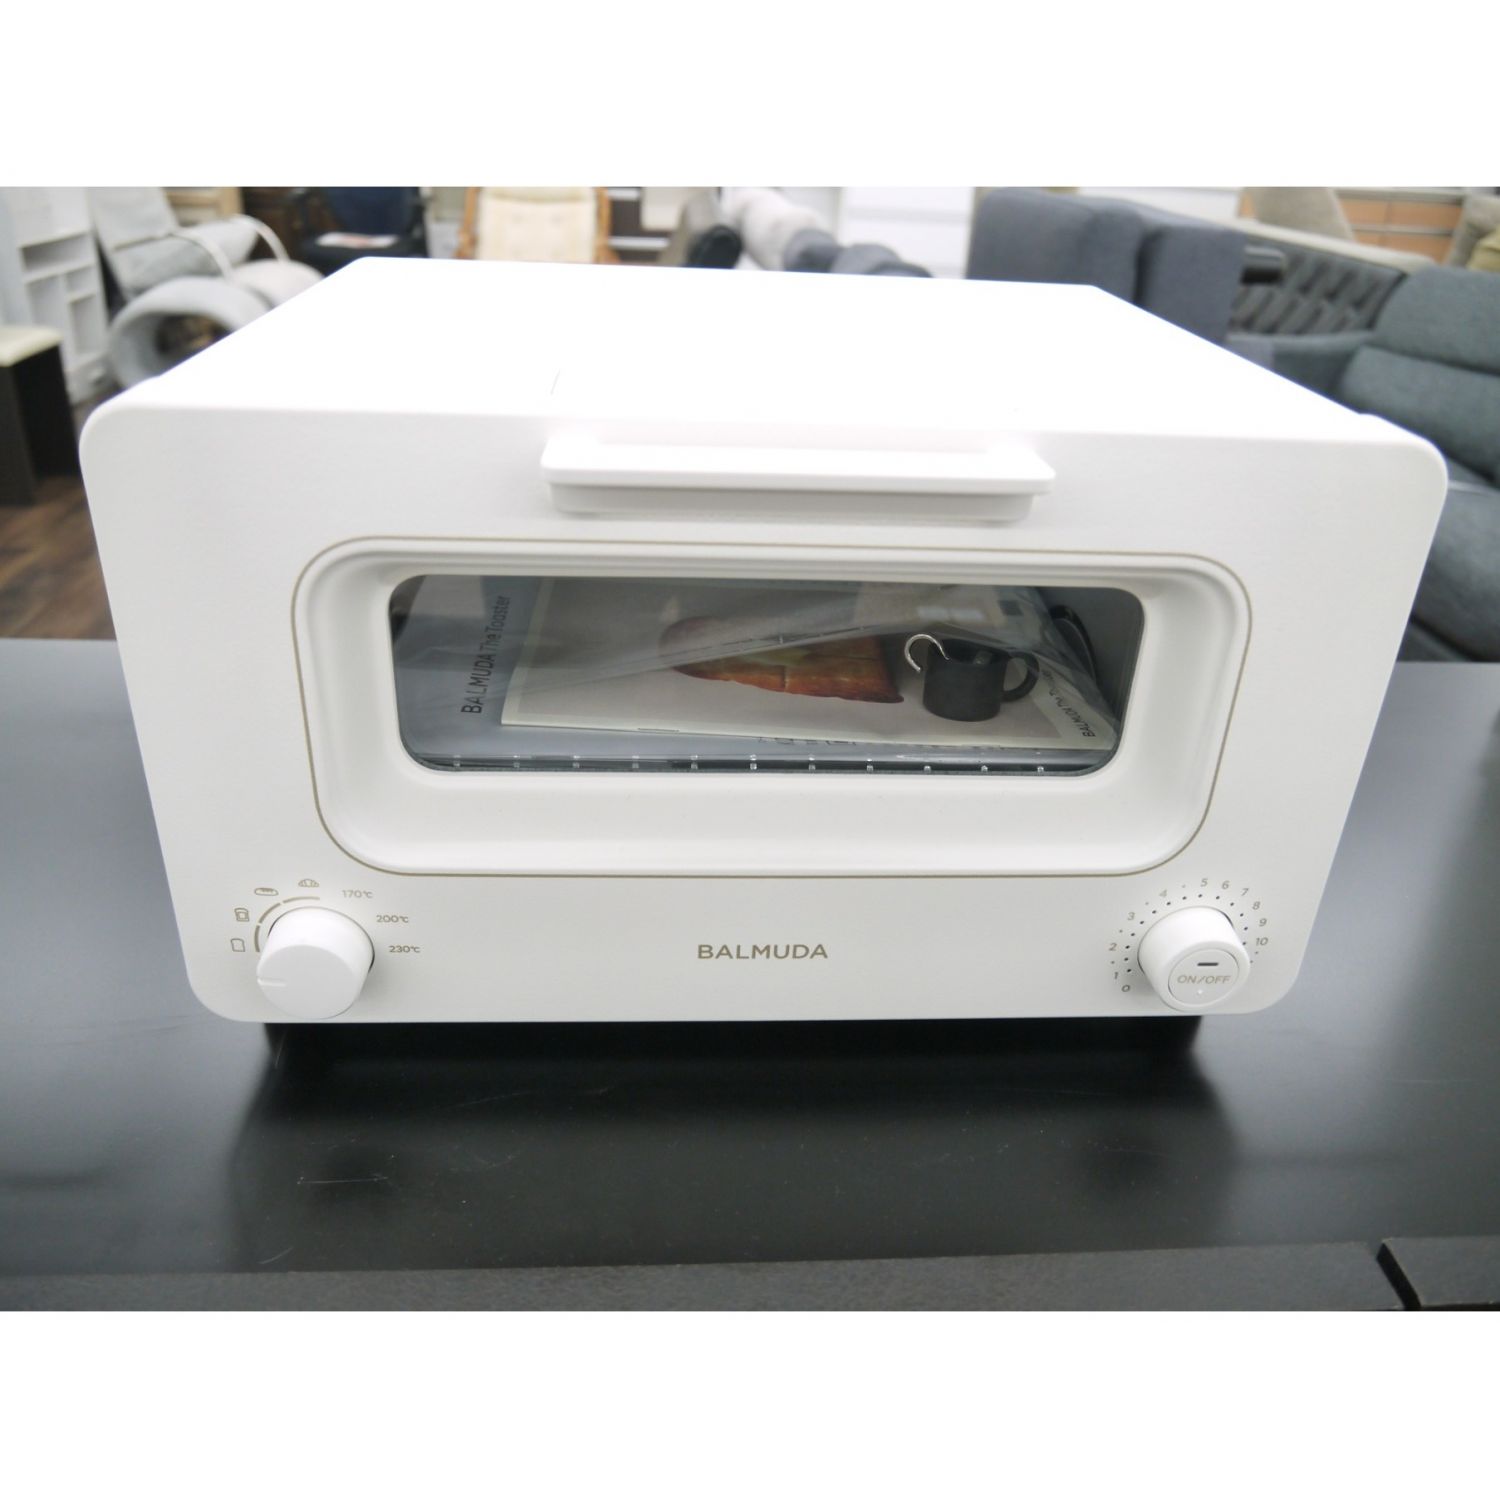 品質保証 バルミューダ BALMUDA チャコー… K05A-CG Toaster The 電子レンジ/オーブン